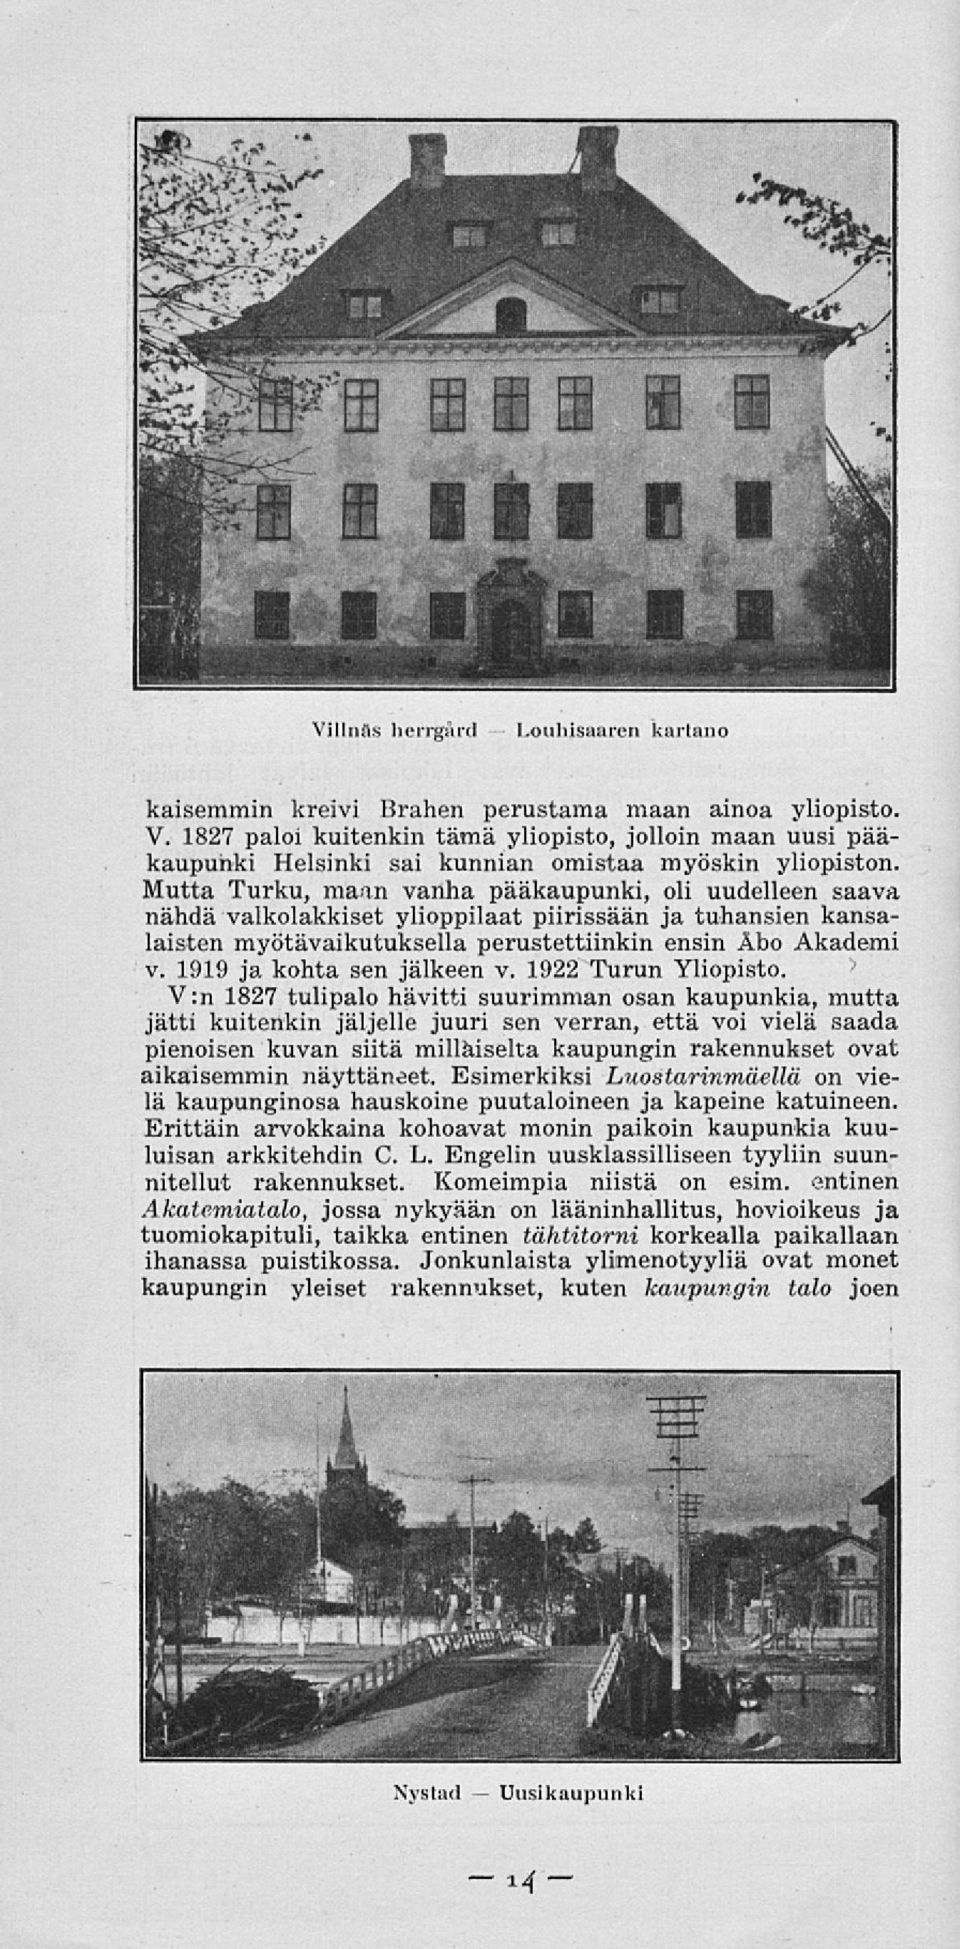 Mutta Turku, maan vanha pääkaupunki, oli uudelleen saava nähdä valkotakkiset ylioppilaat piirissään ja tuhansien kansalaisten myötävaikutuksella perustettiinkin ensin Åbo Akademi v.